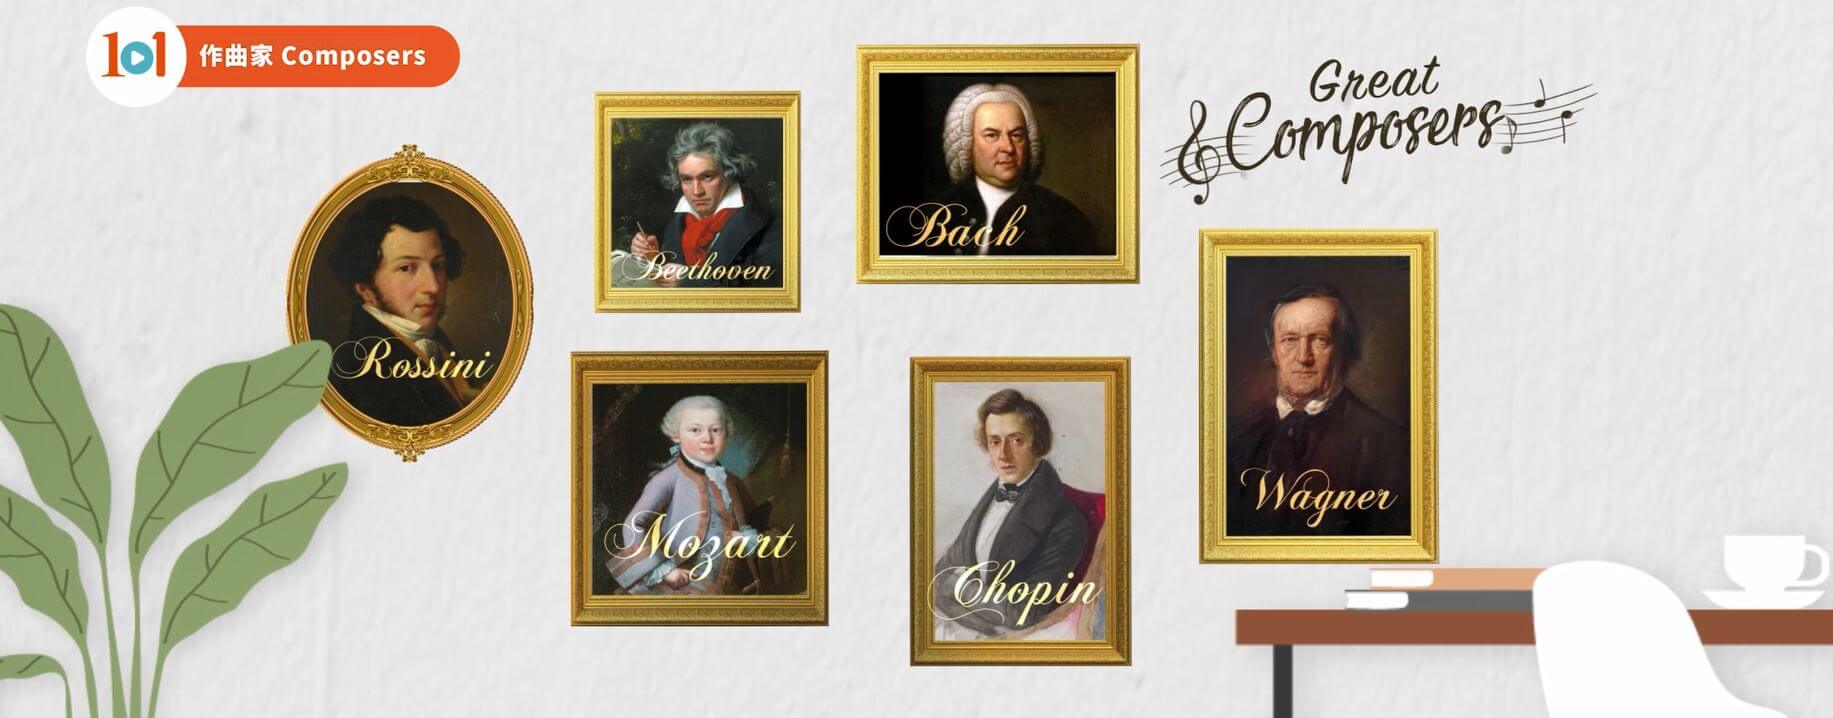 《美樂咖啡館》精選十位不同時期和風格的作曲家：J.S.巴赫、莫扎特、貝多芬、羅西尼、蕭邦、華格納、小約翰‧史特勞斯、柴可夫斯基、馬勒和薩替。